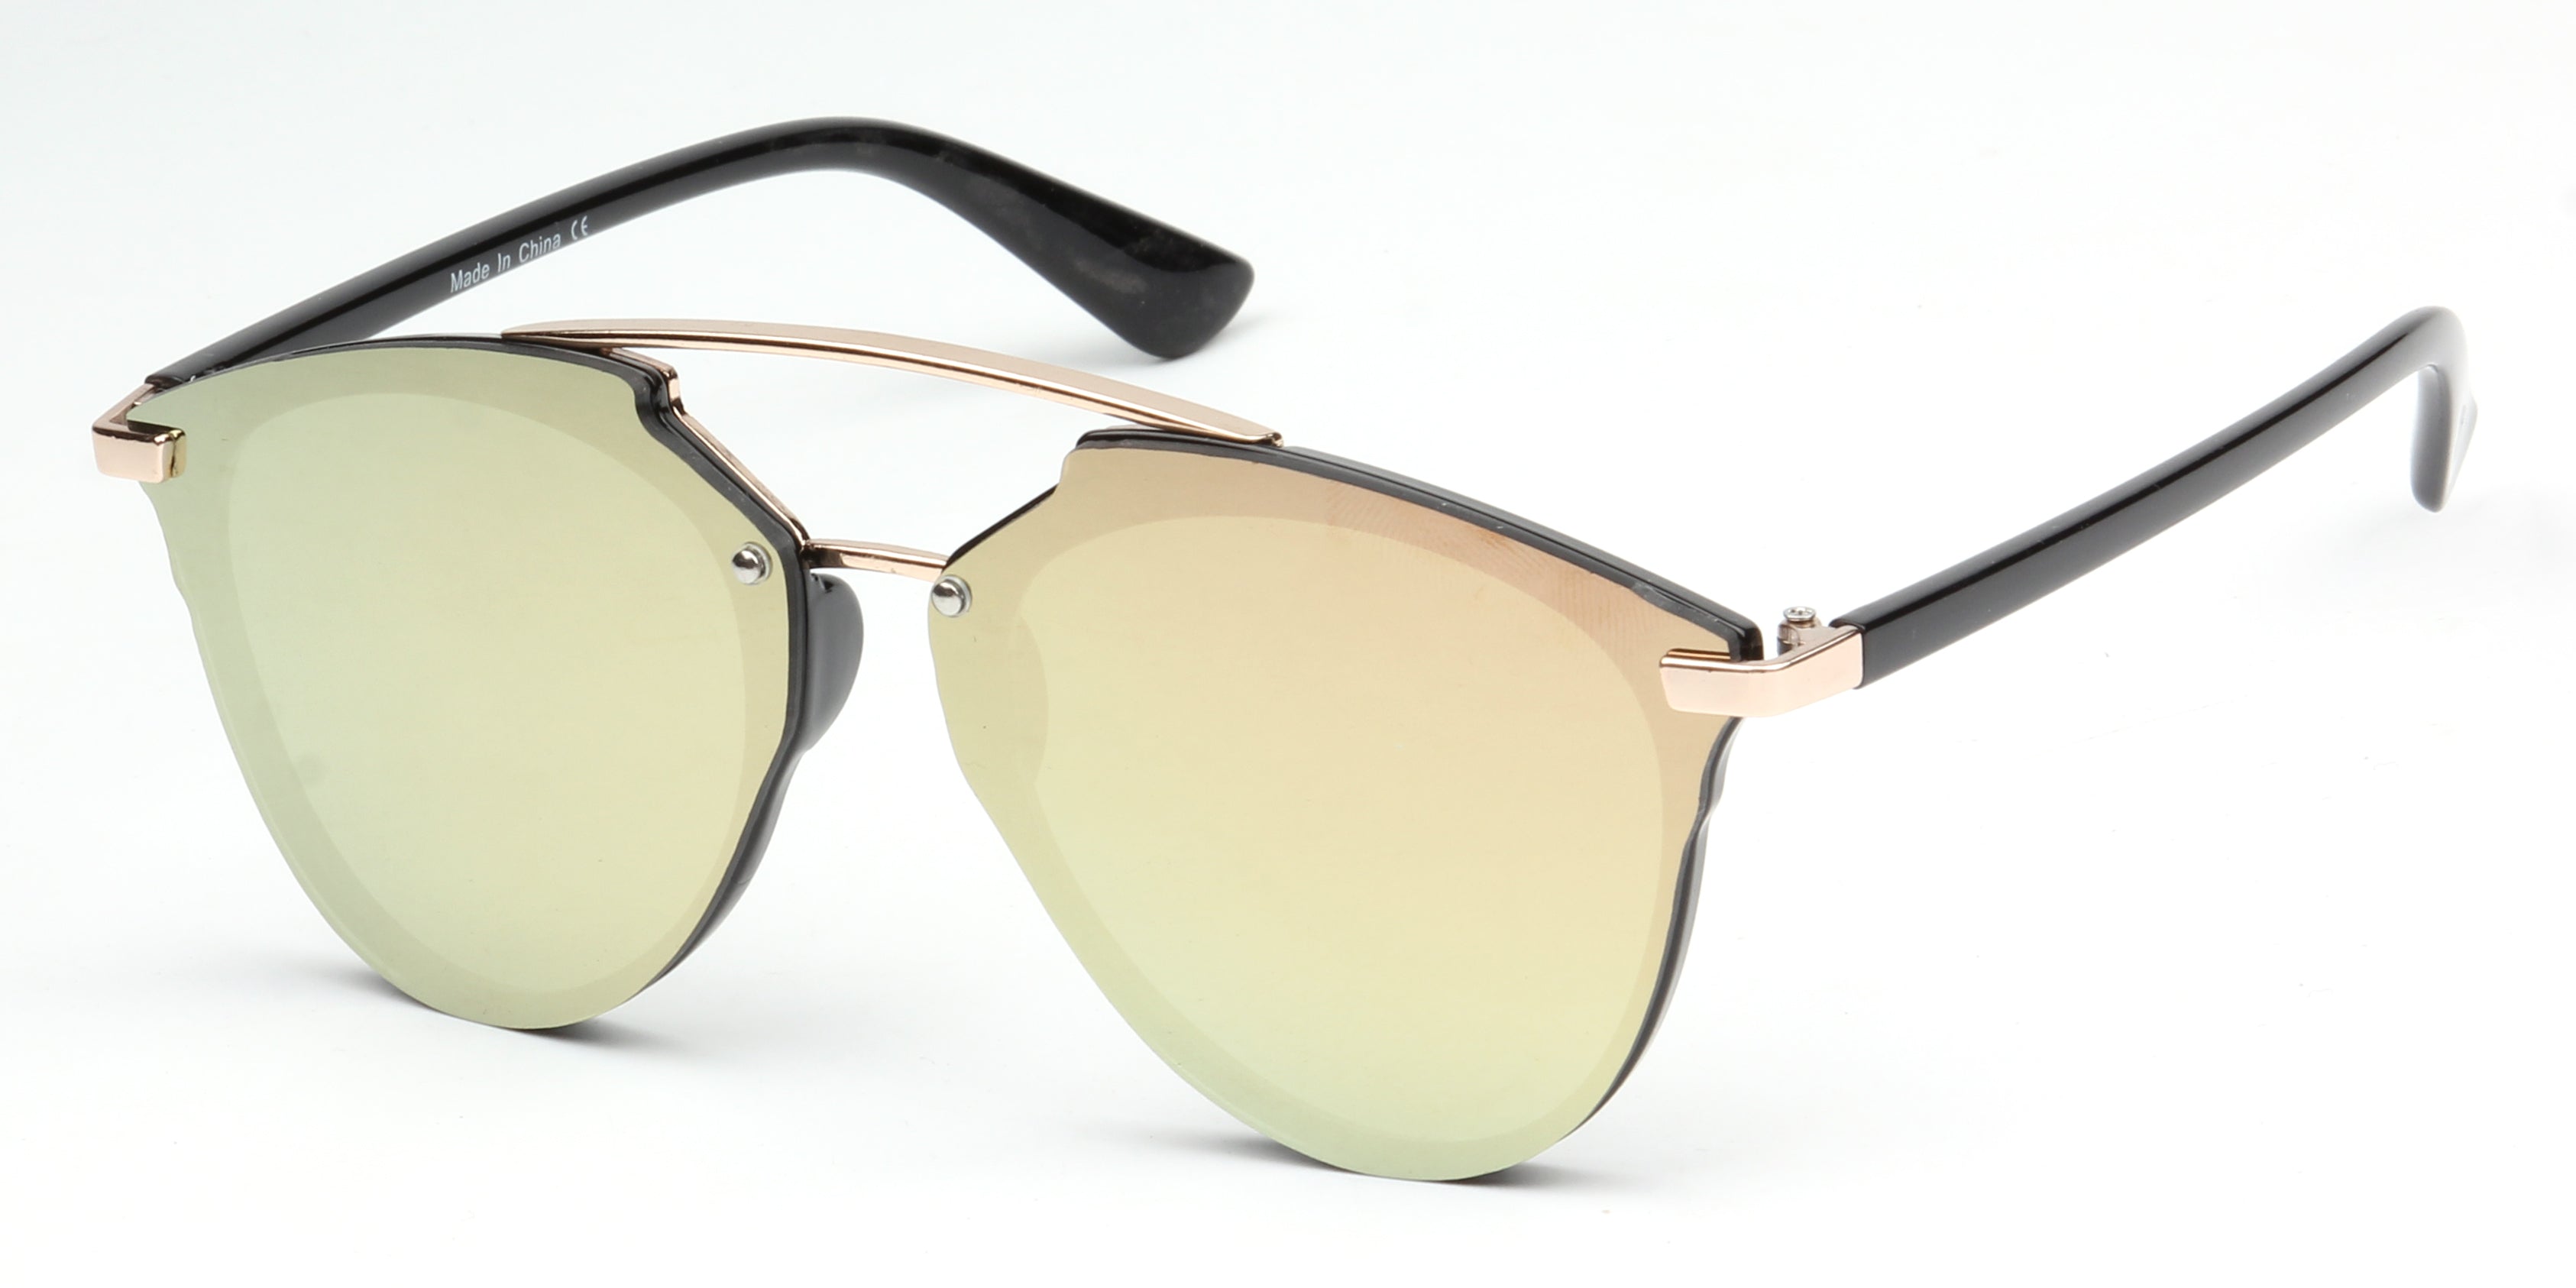 S1010 - Unisex Mirrored Round Sunglasses Peach